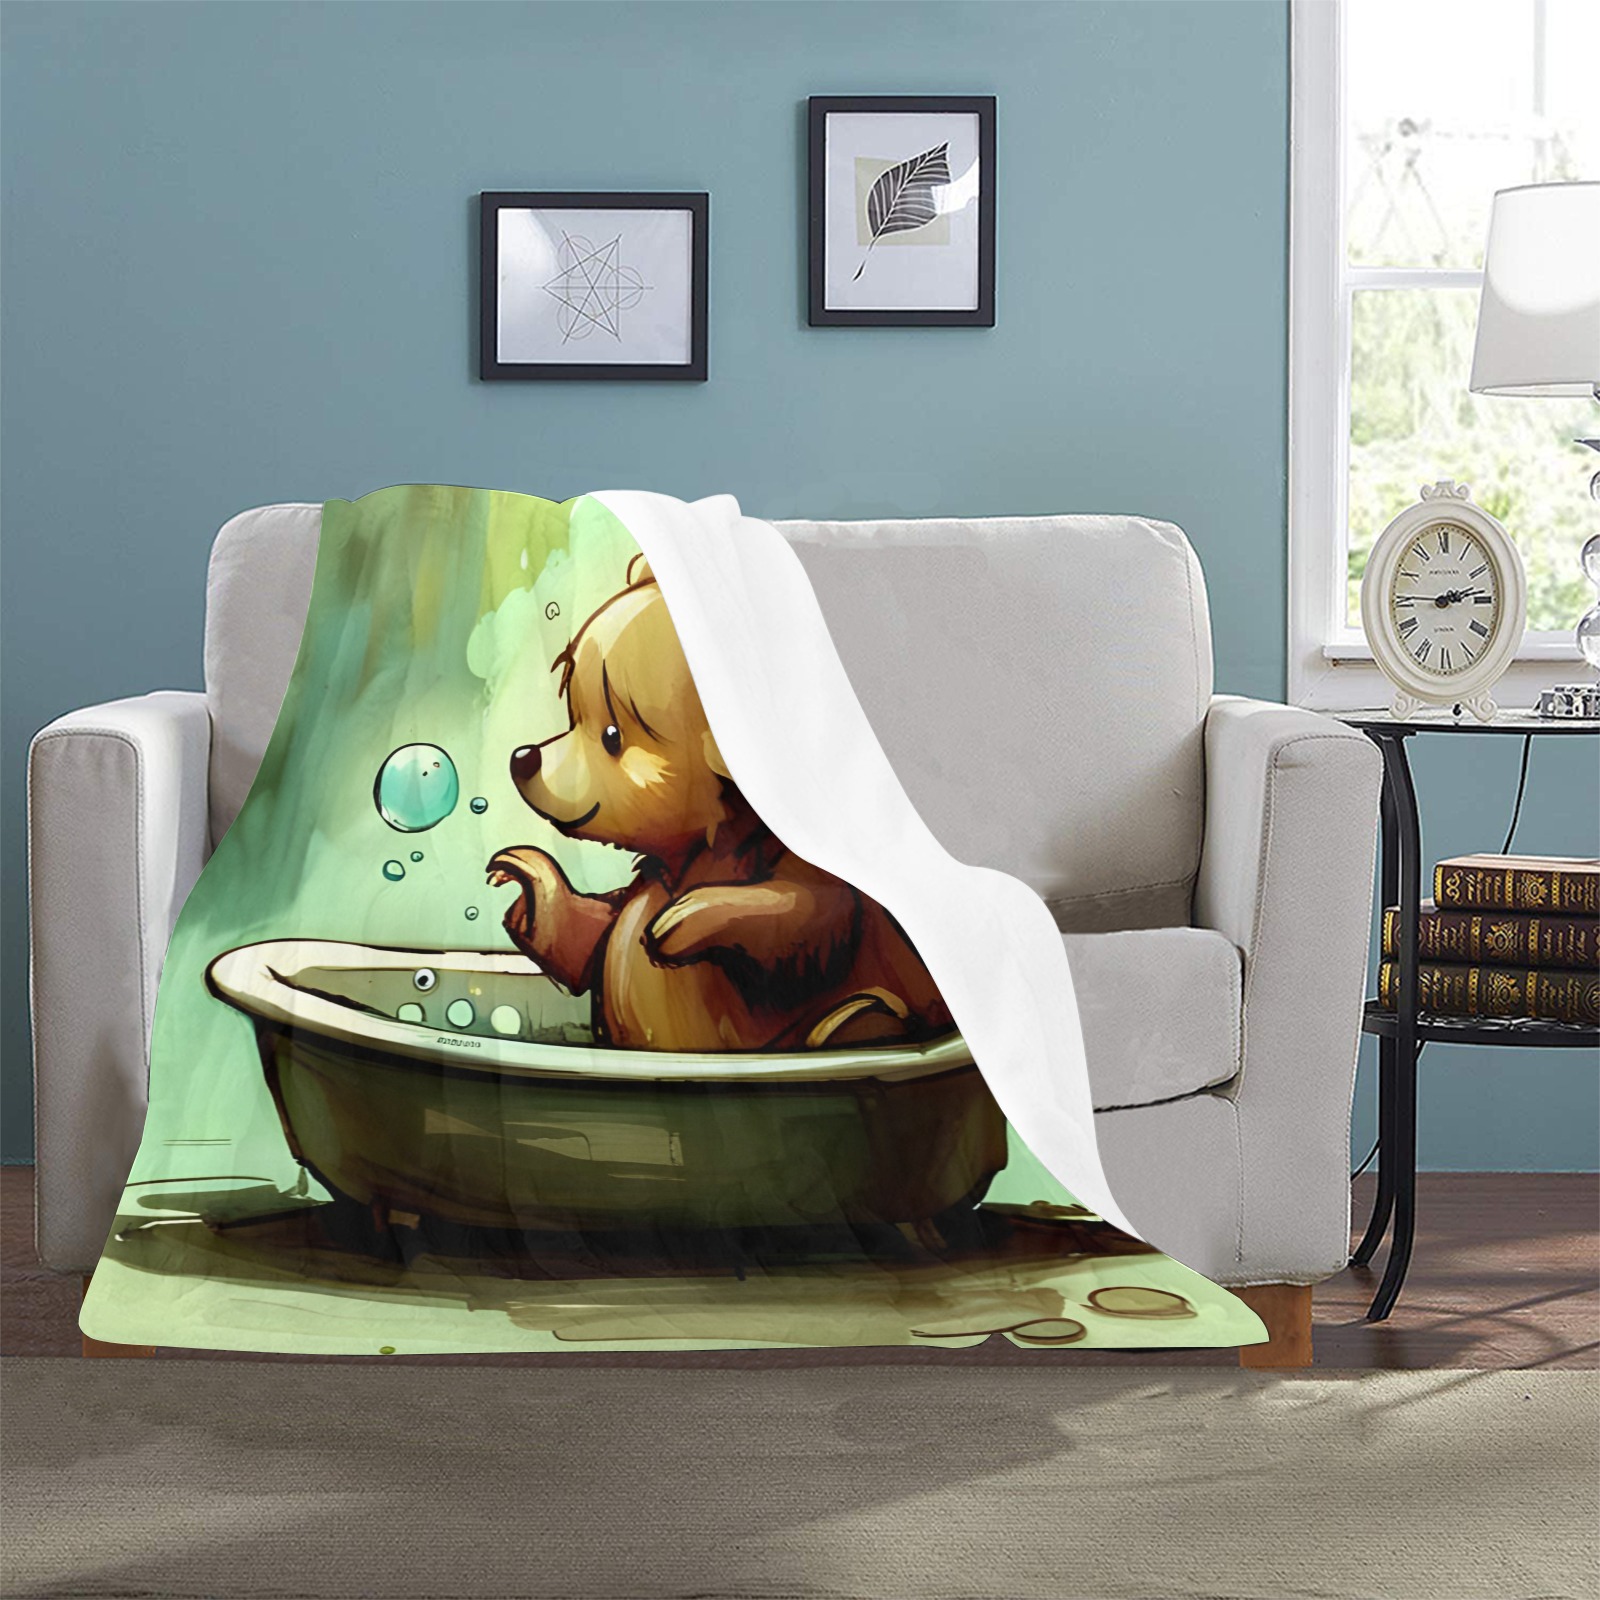 Little Bears 6 Ultra-Soft Micro Fleece Blanket 32"x48"